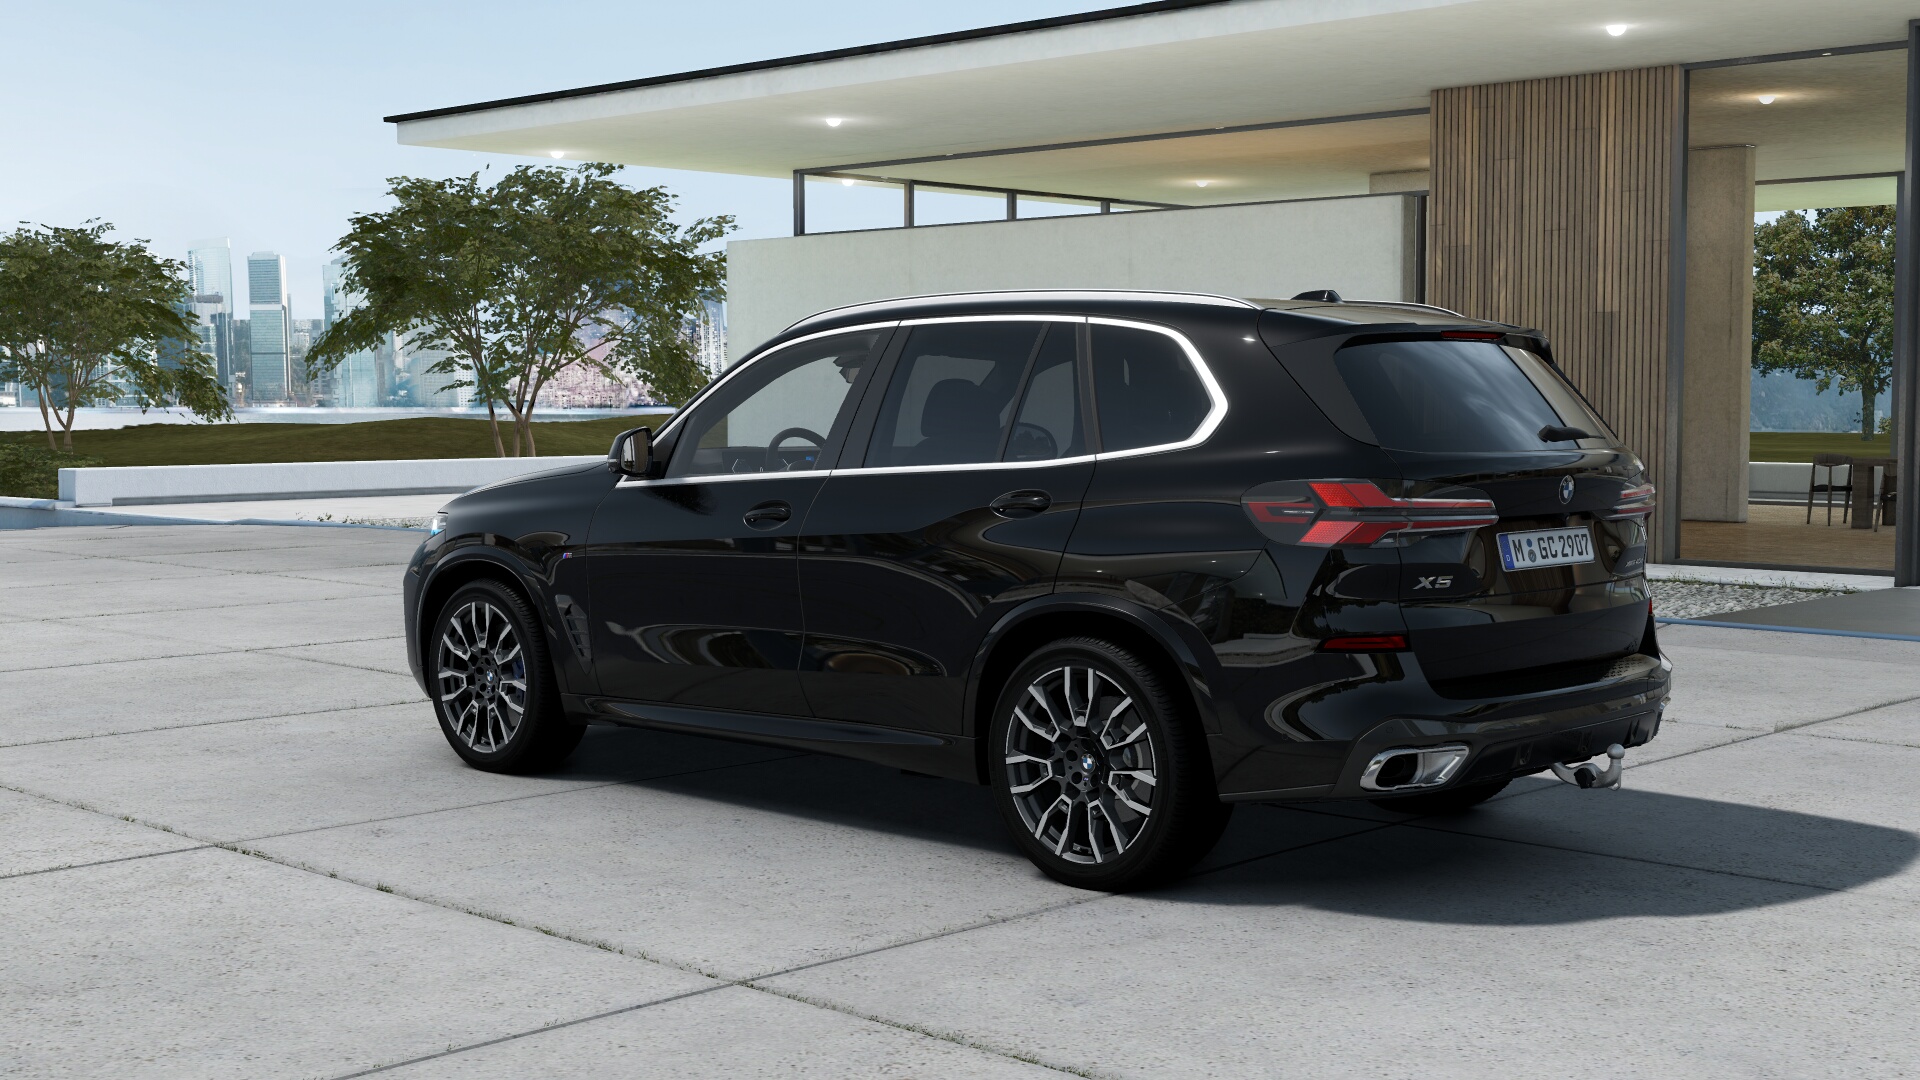 BMW X5 40d xDrive Msport | nové auto skladem | ihned k předání | FACELIFT | sportovně luxusní naftové SUV | maximální výbava | skvělá cena | skladem a ihned k předání | objednání online | auto eshop AUTOiBUY.com